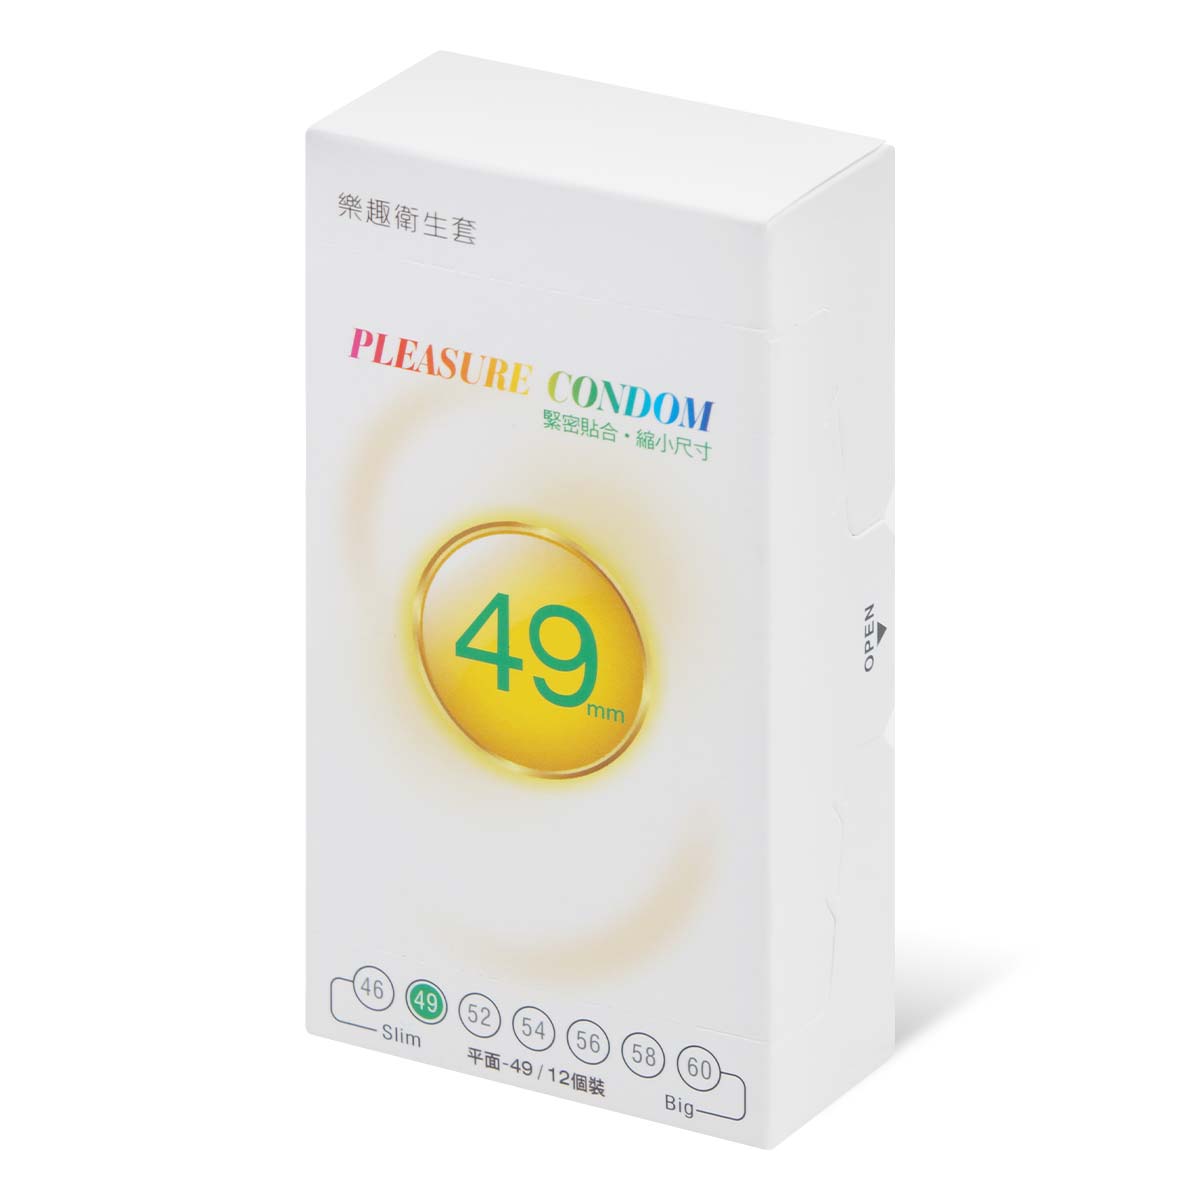 Pleasure Condom Slim 49mm 12's Pack Latex Condom (Short Expiry)-thumb_1